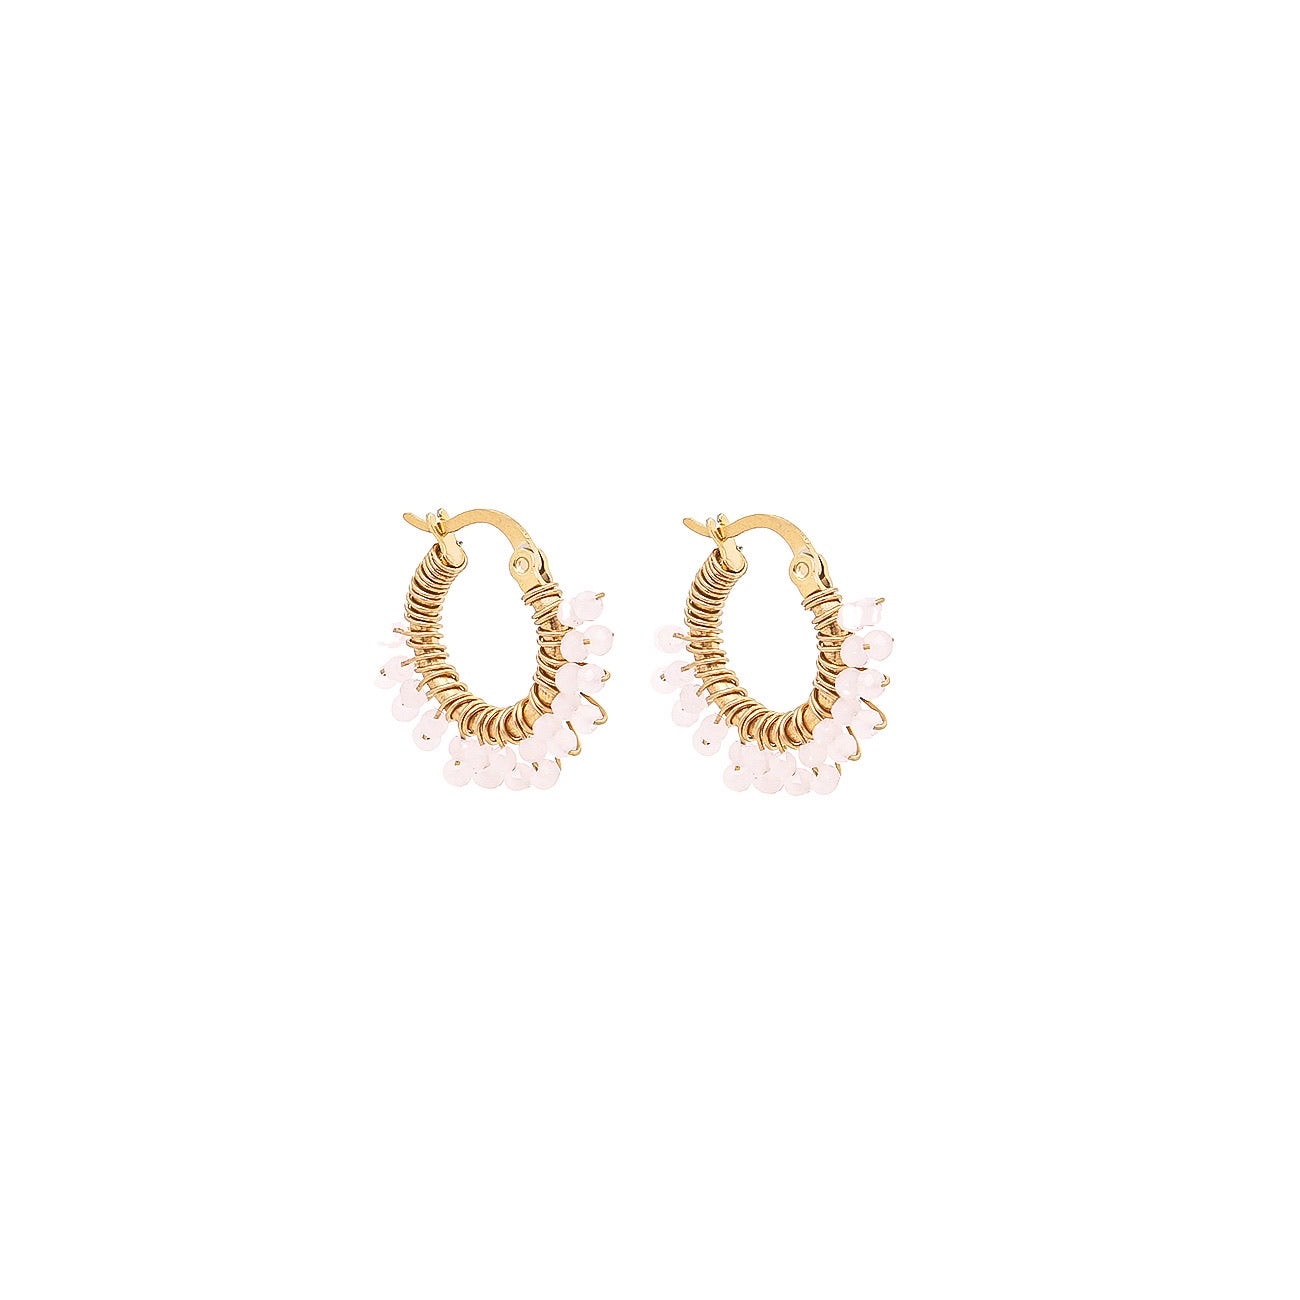 Tiny Glam loop earrings - Powder pink